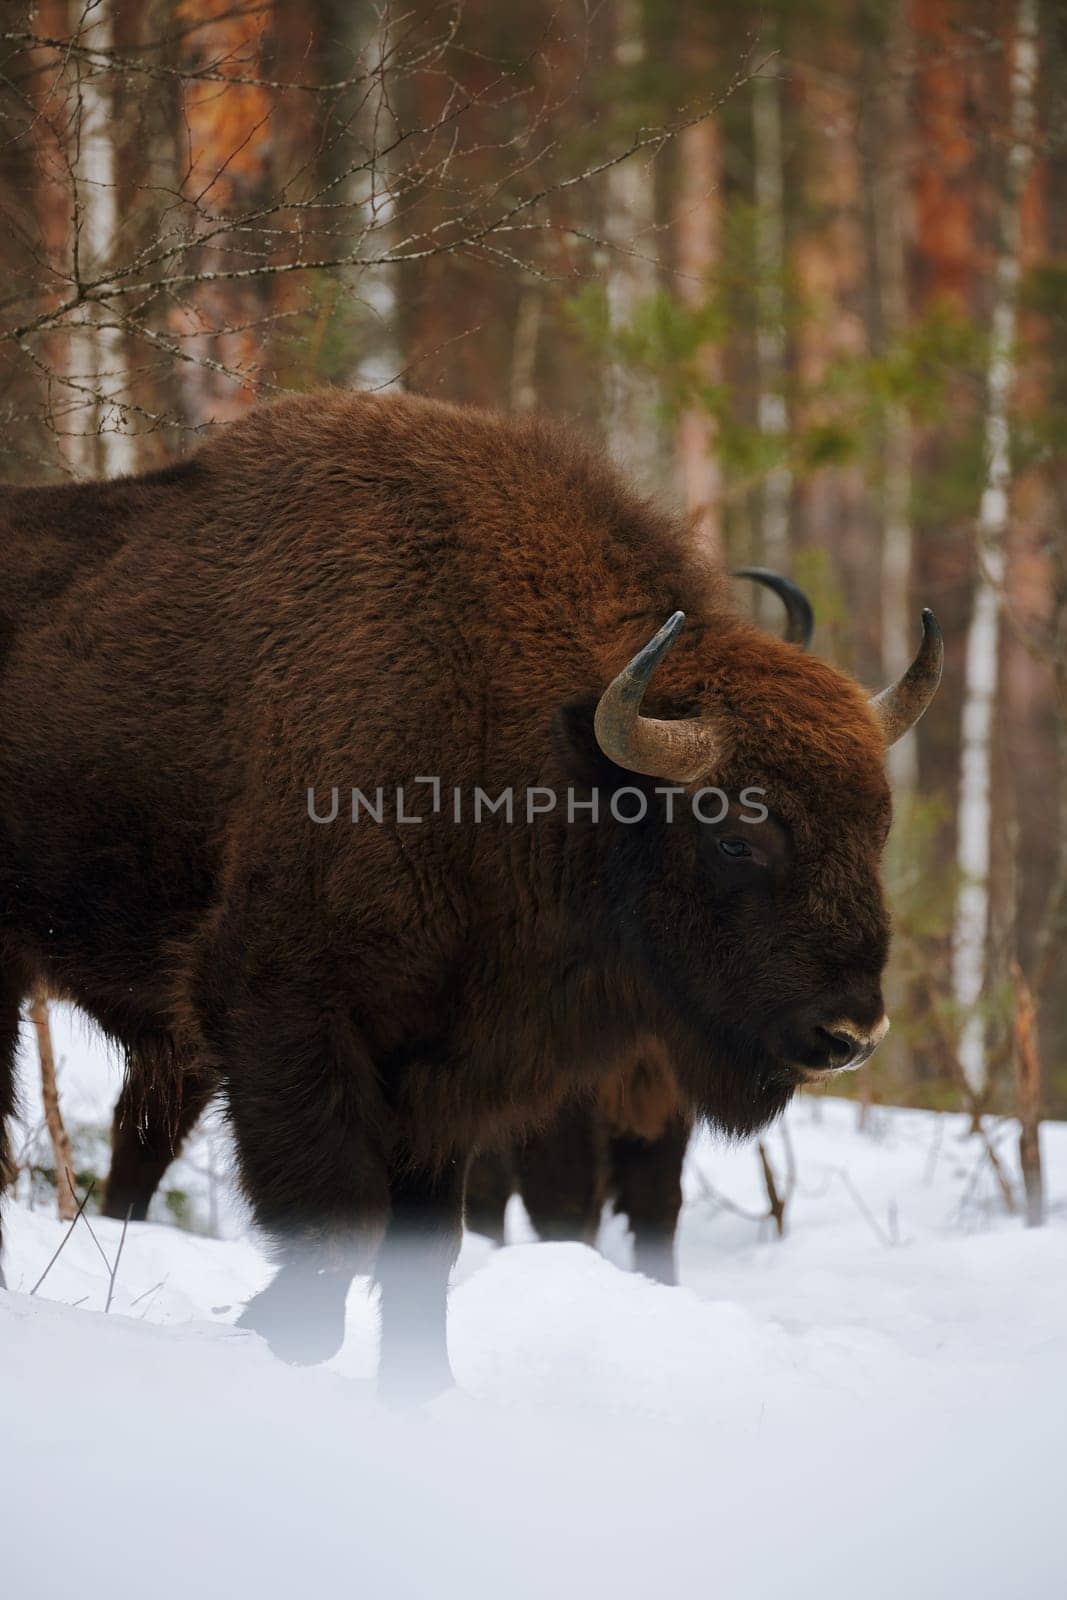 Wild European Bison in Winter Forest. European bison - Bison bonasus, artiodactyl mammals of the genus bison.